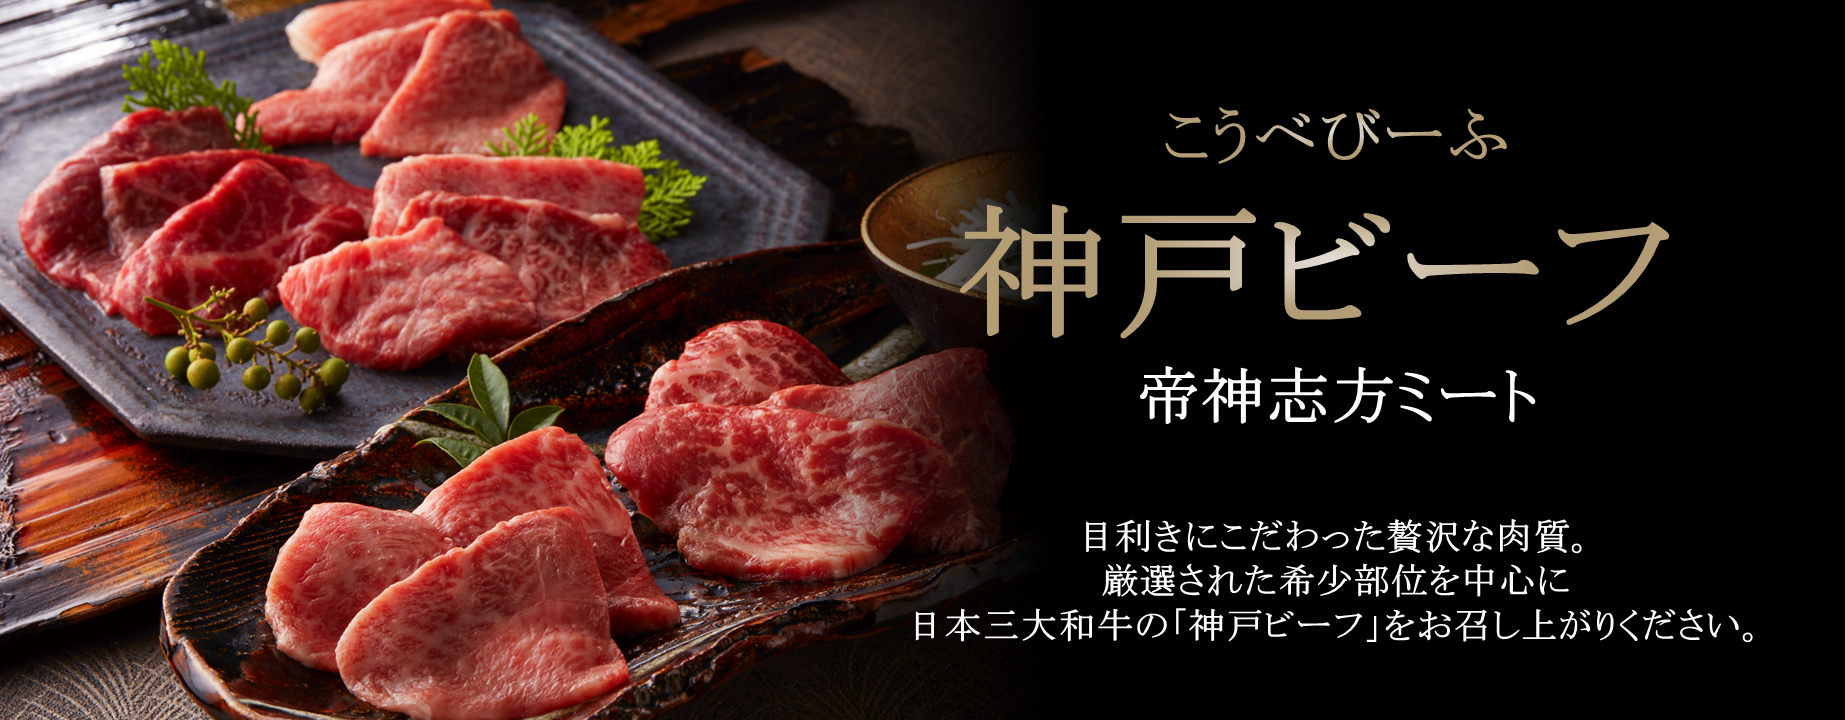 厳選された希少部位を中心に日本三大和牛の「神戸ビーフ」をお召し上がりください。